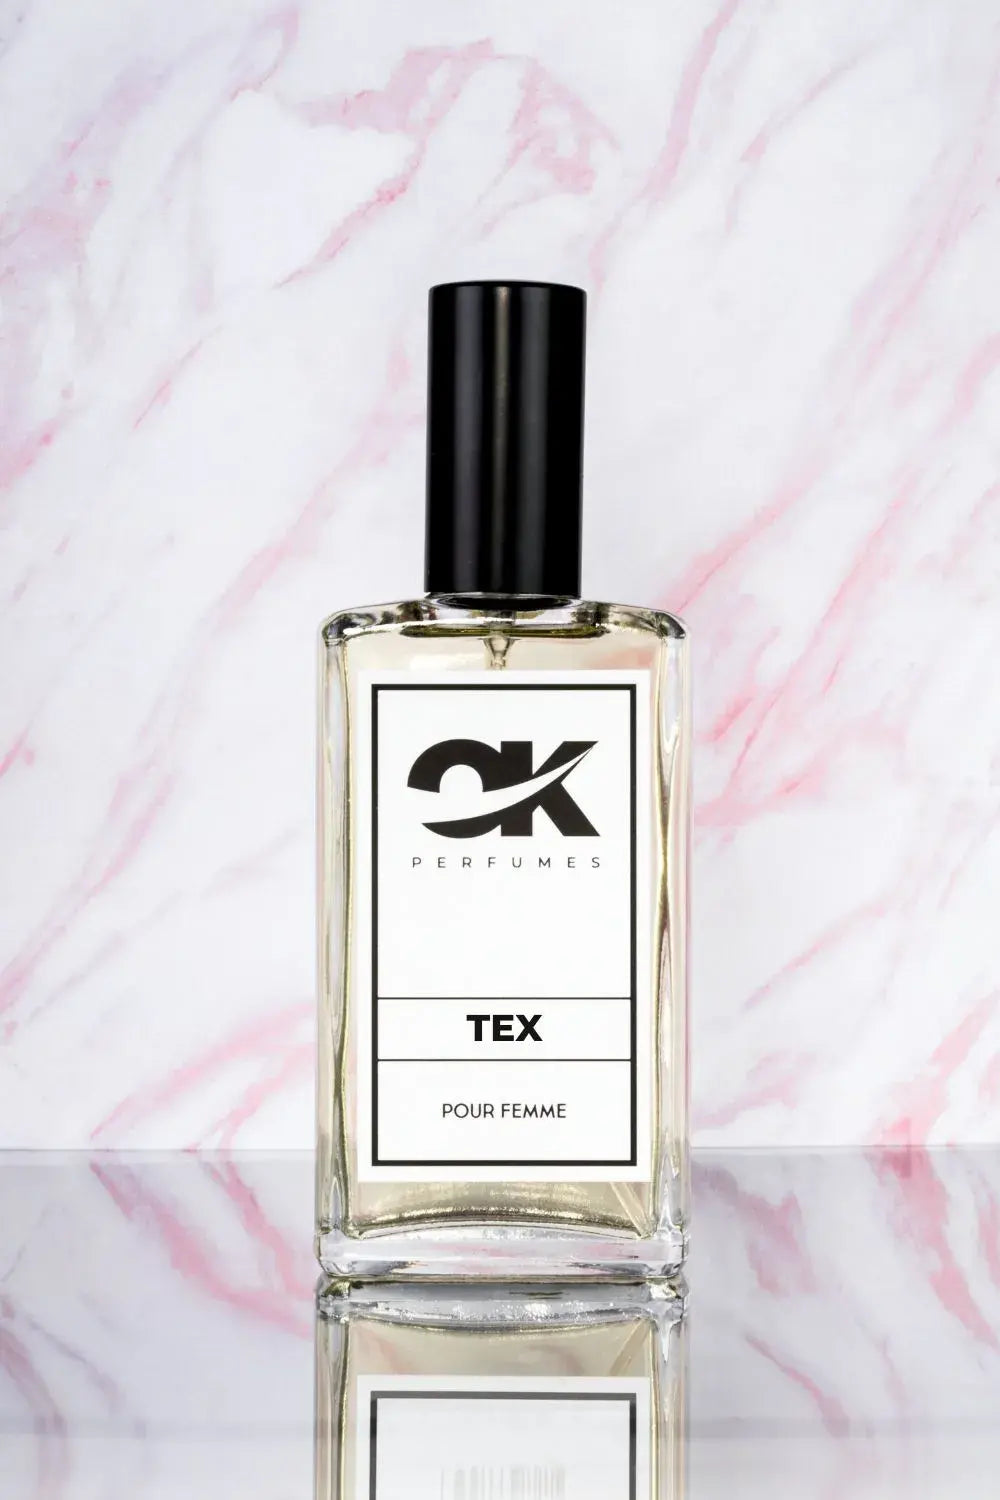 TEX - Lembre-se de Tous Loveme, o Elixir Esmeralda